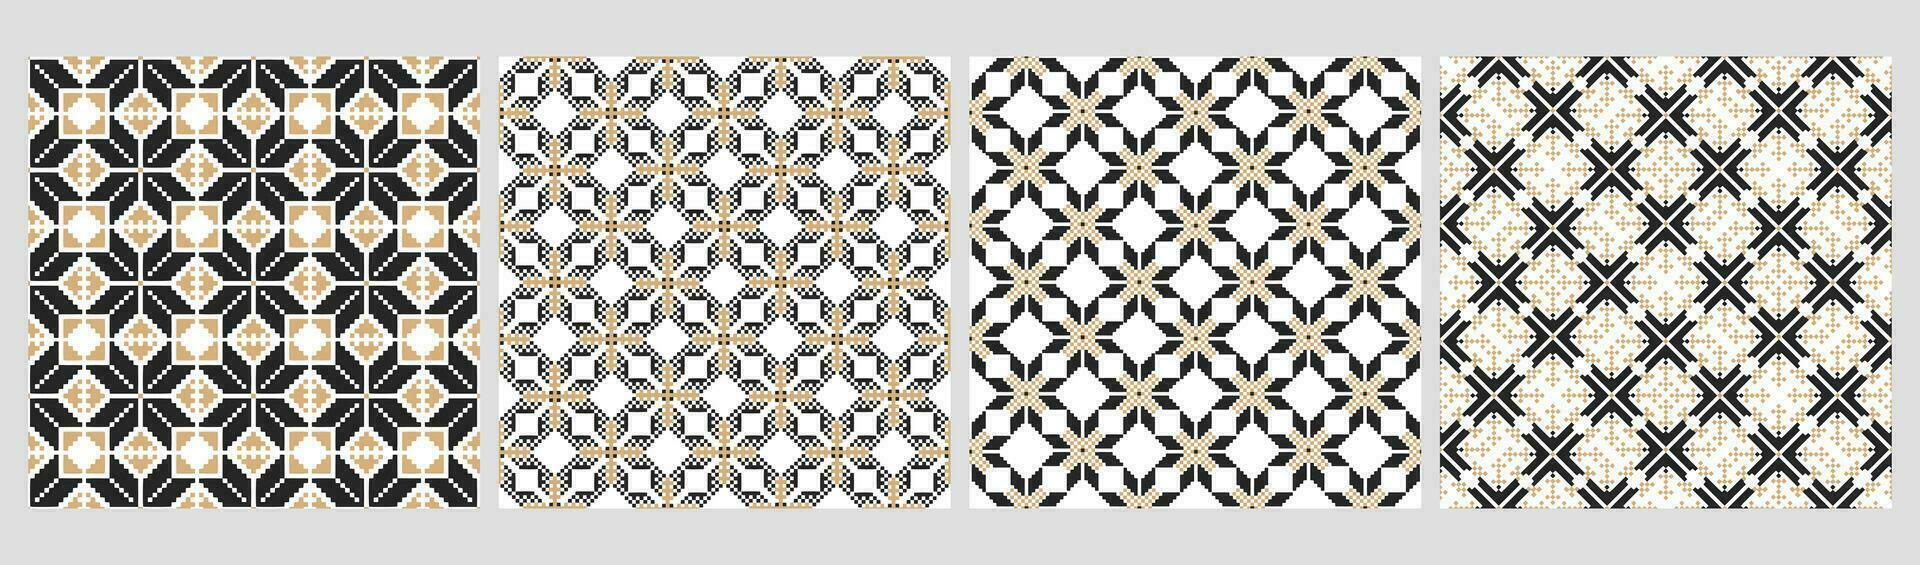 conjunto de étnico sin costura patrones. geométrico resumen bicolor patrones étnico motivos imprimir, textil, fondo, vector